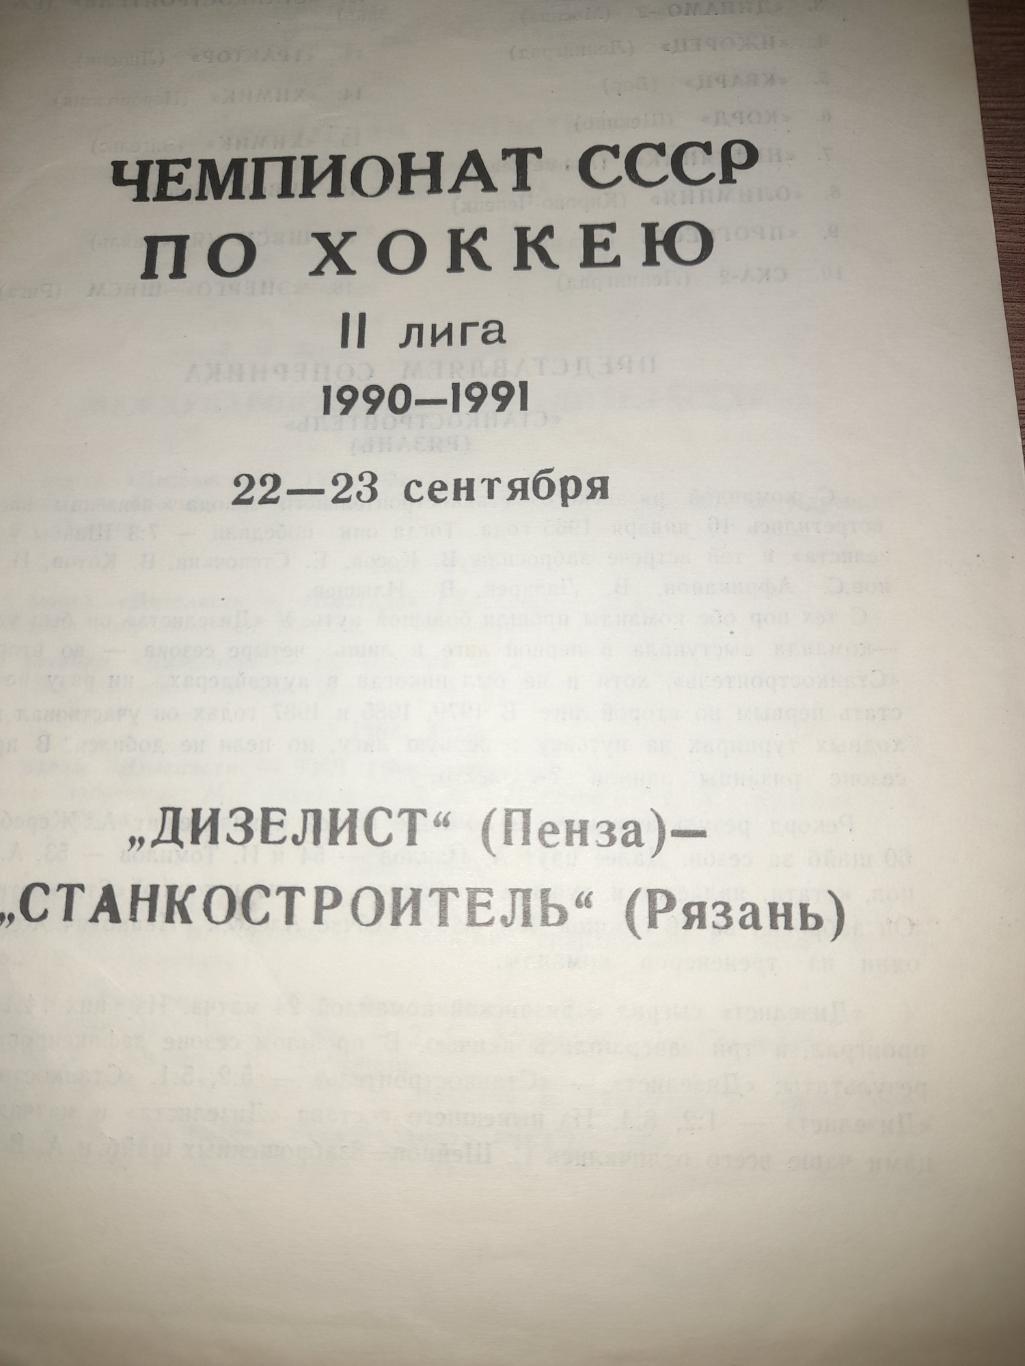 Дизелист Пенза - Станкостроитель Рязань 1990